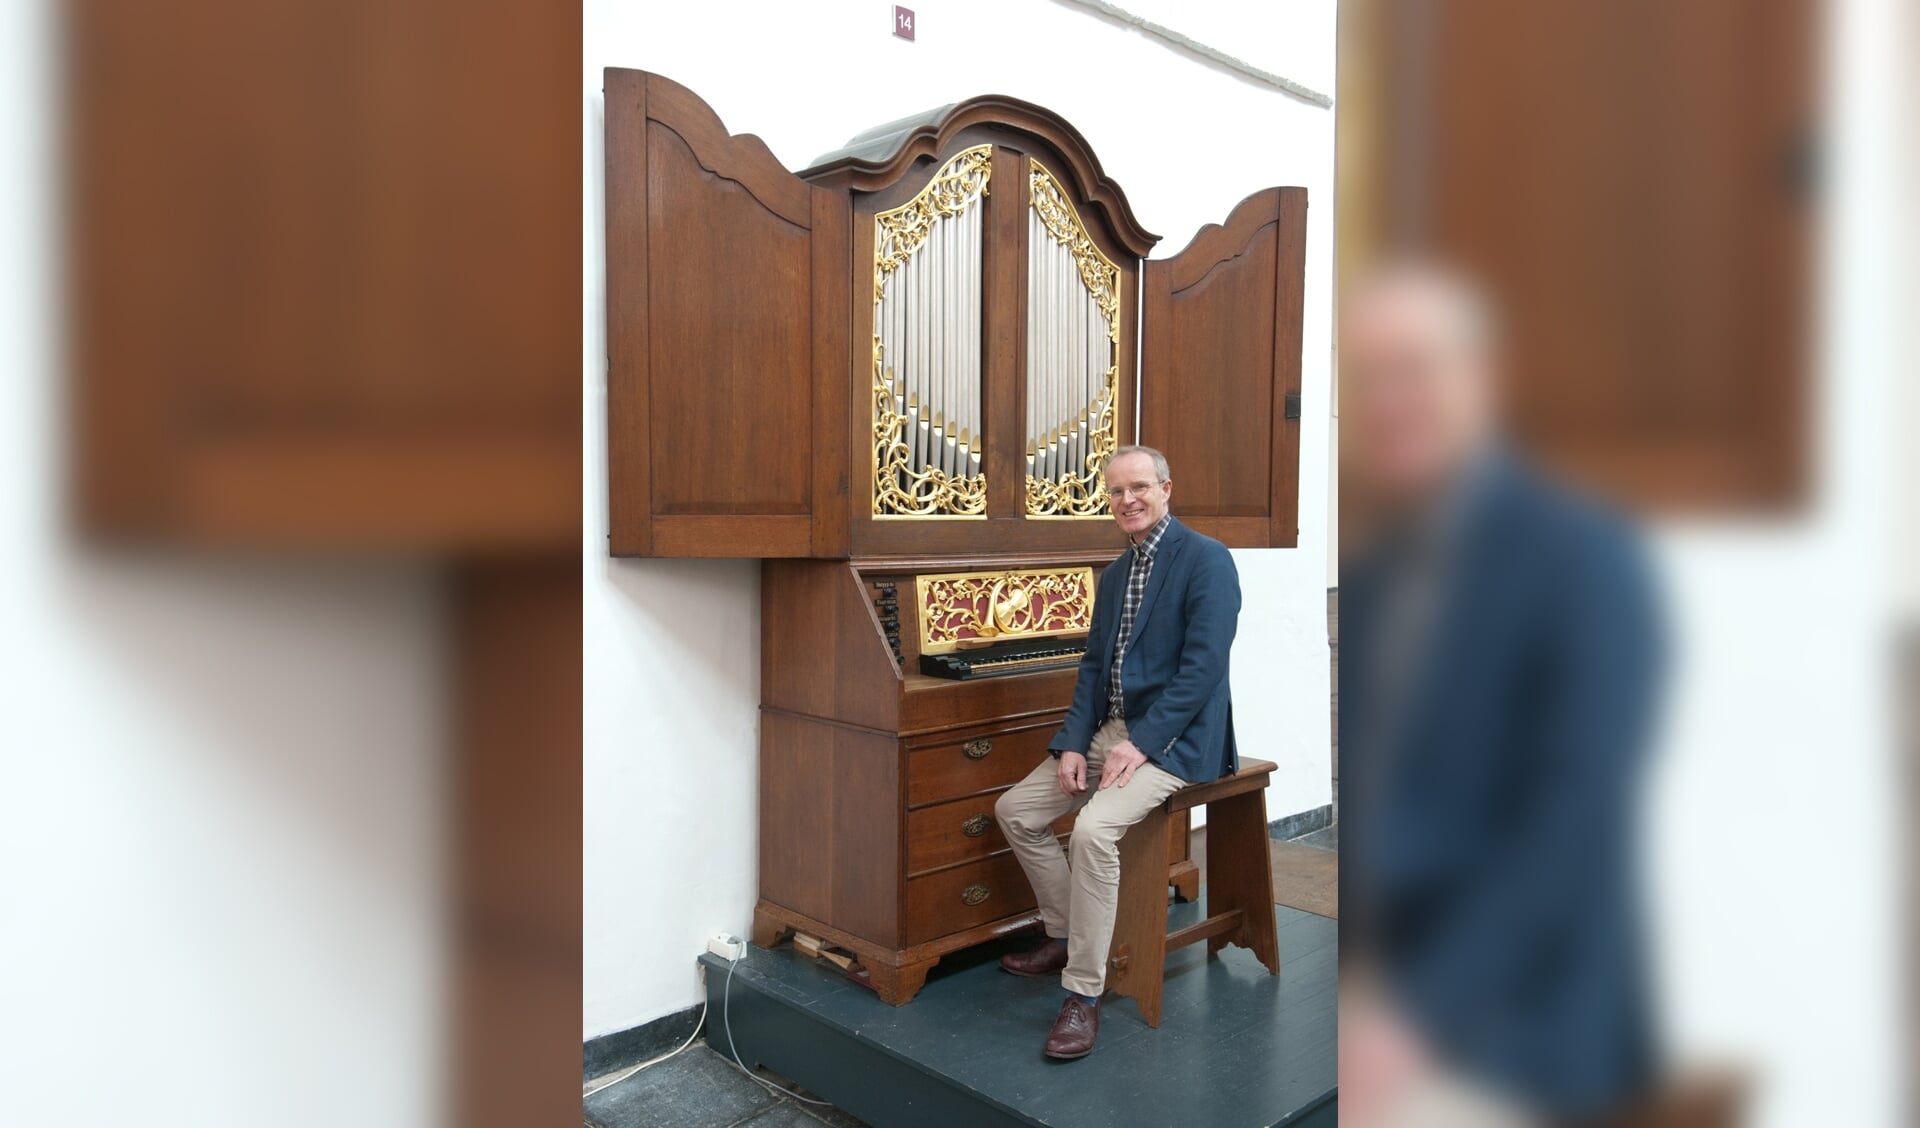 De bekende organist Bas de Vroome speelt zondagmiddag in Pijnacker